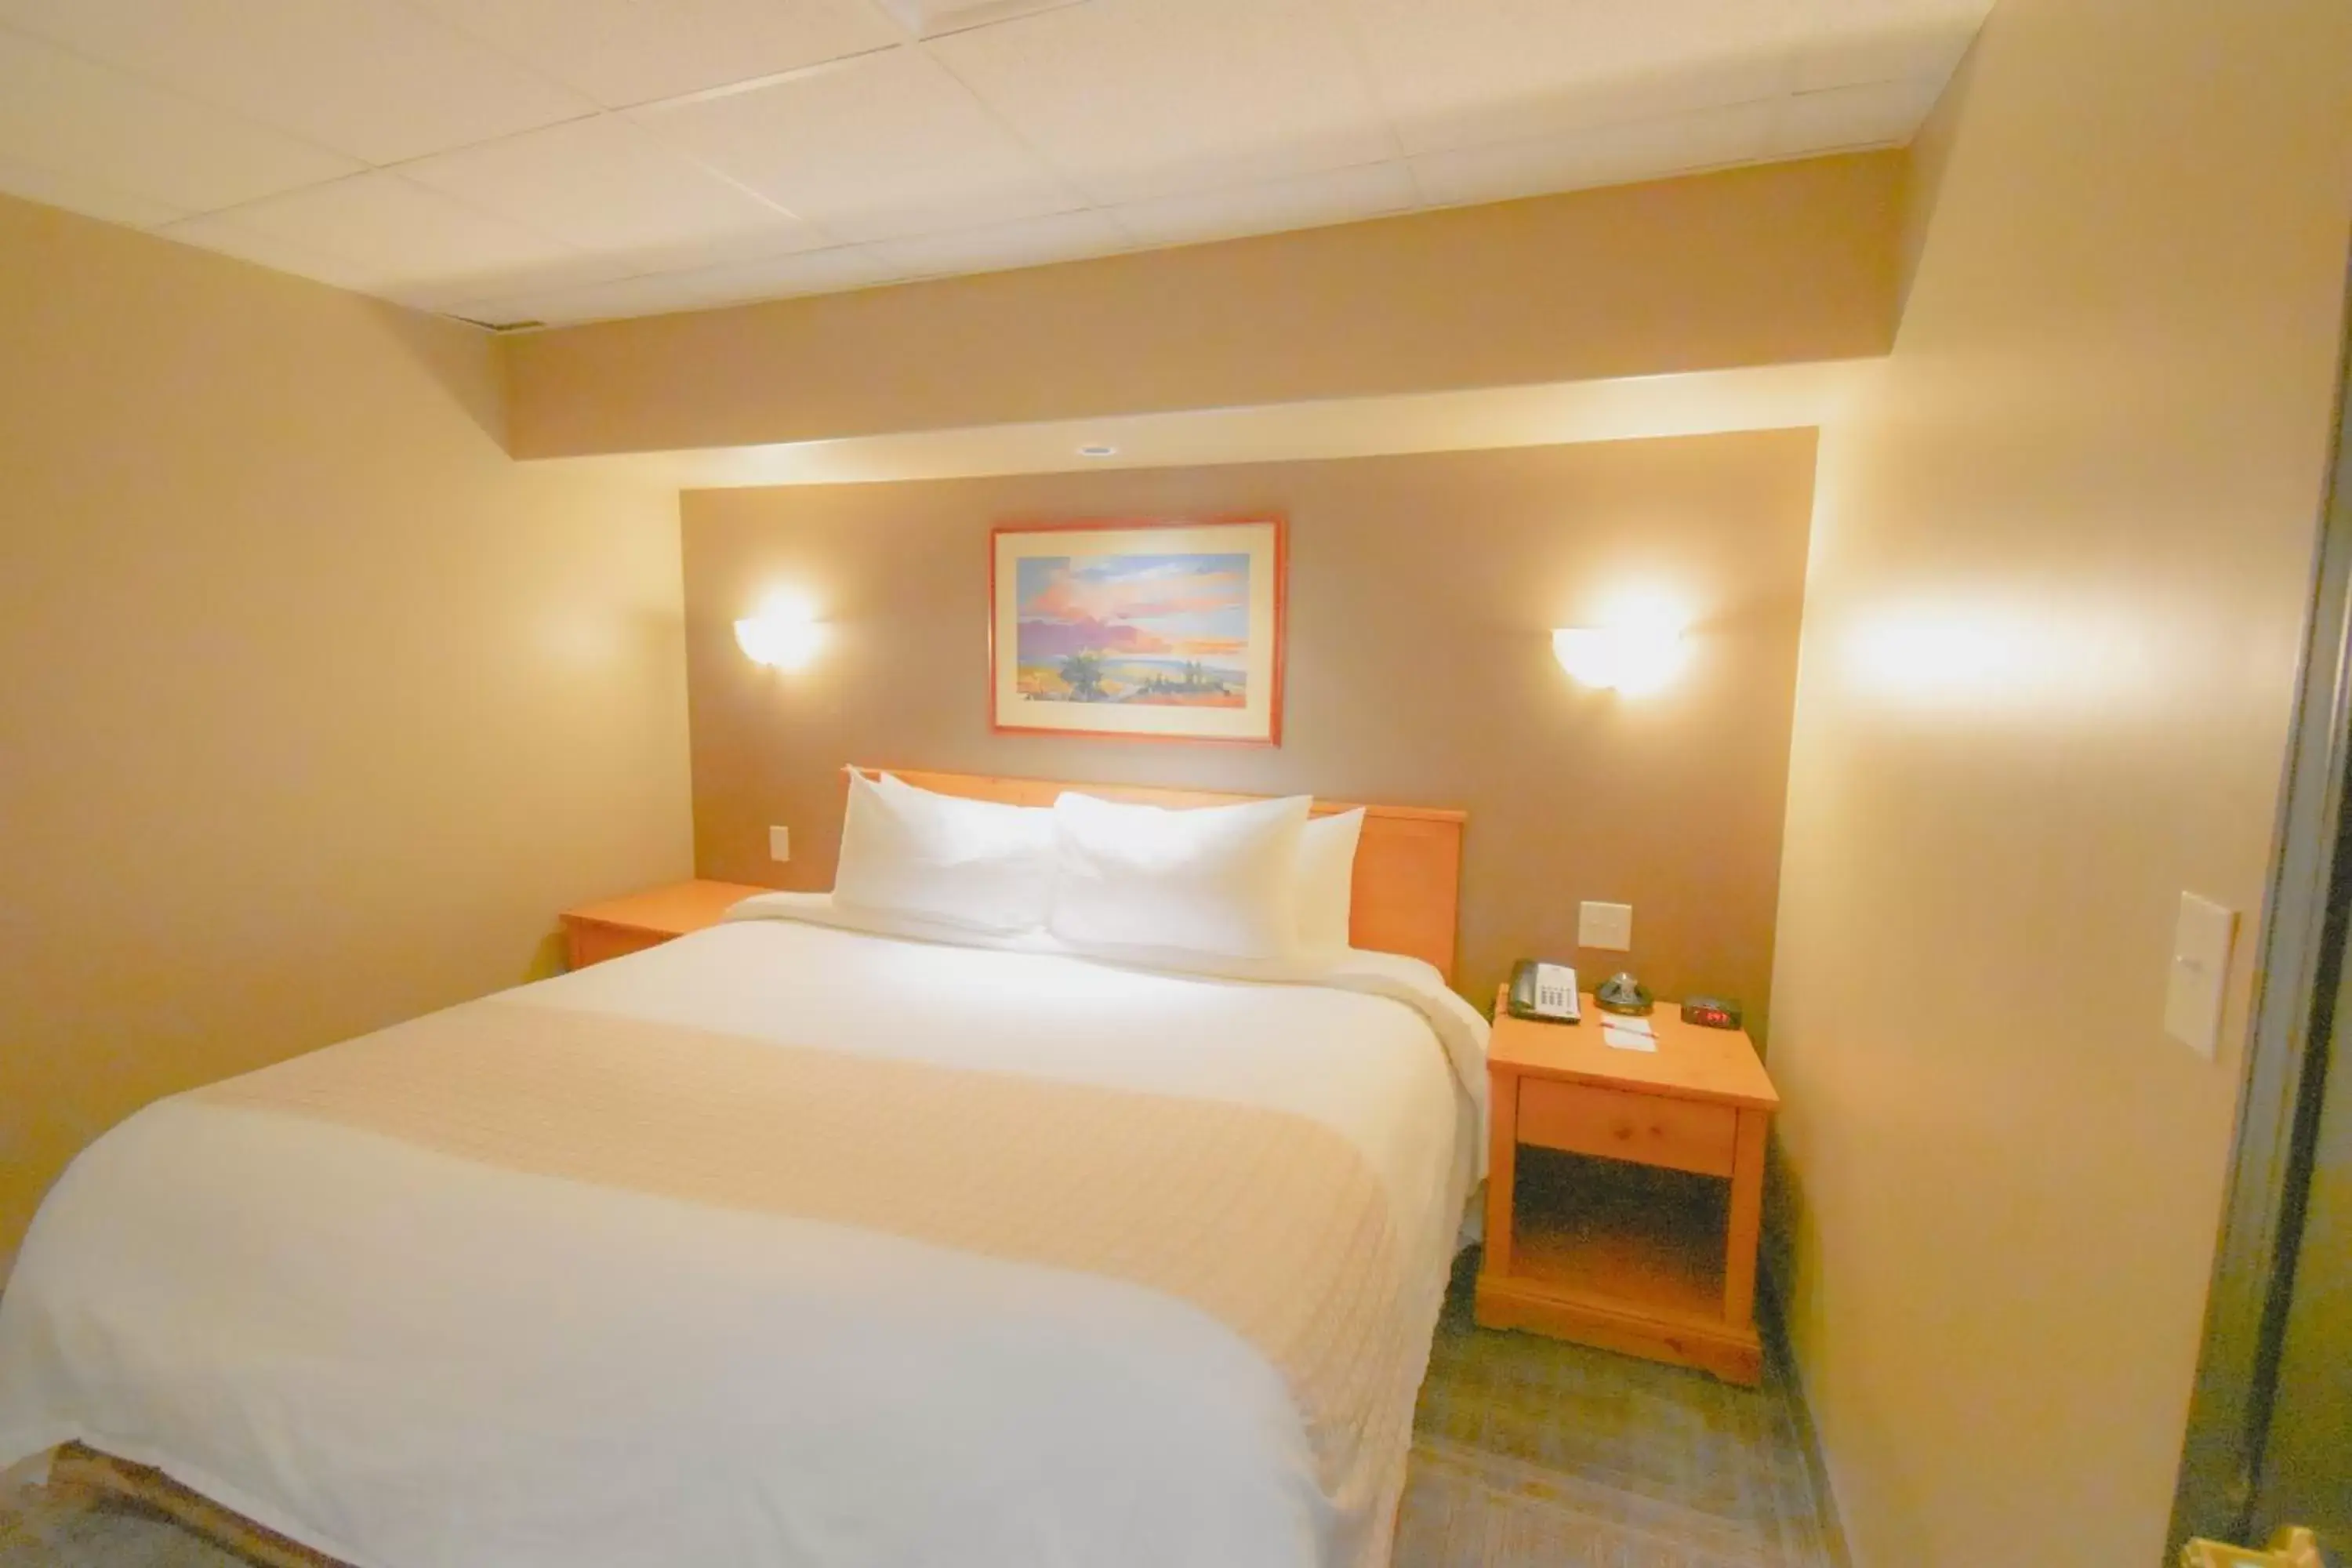 Bedroom, Bed in Canad Inns Destination Centre Portage la Prairie